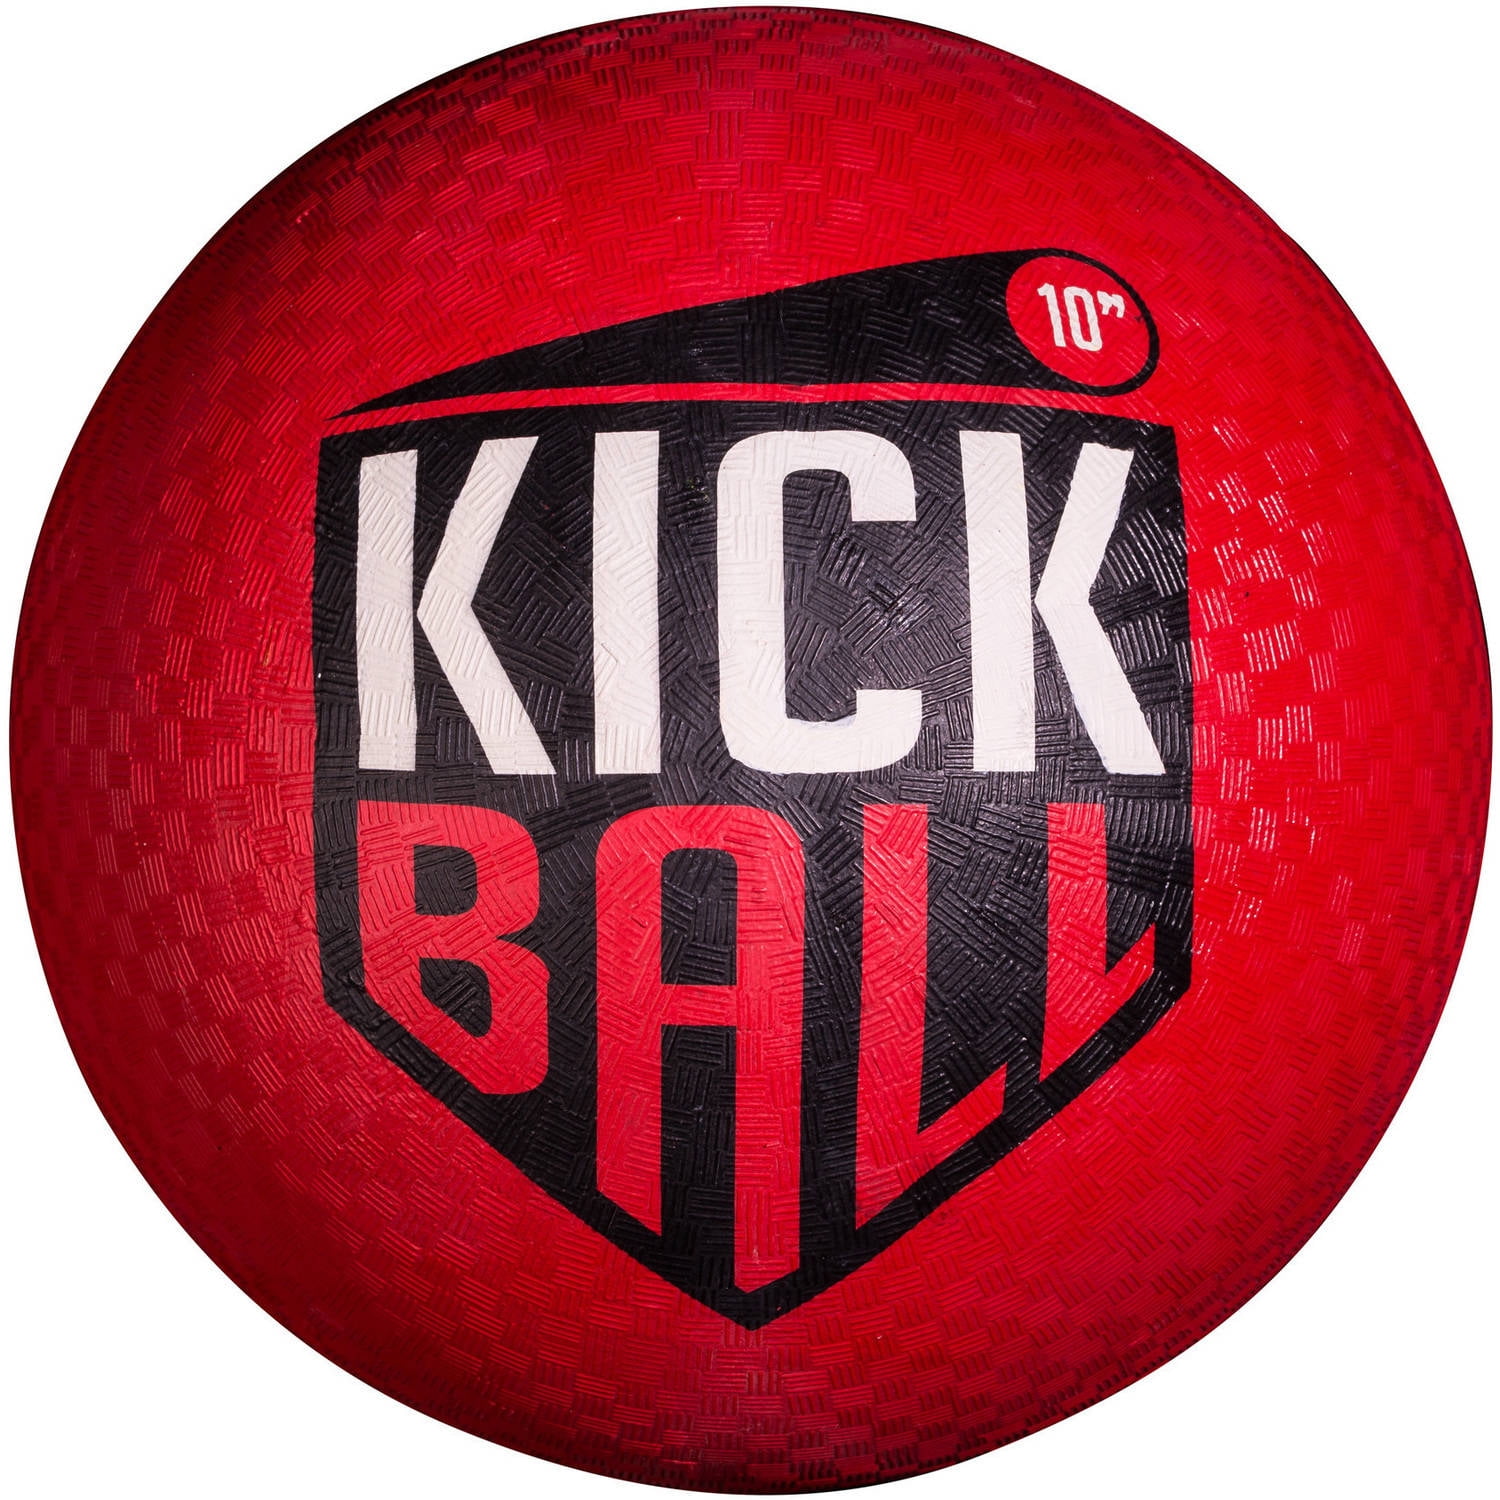 10" Red Rubber Kick Ball - Walmart.com